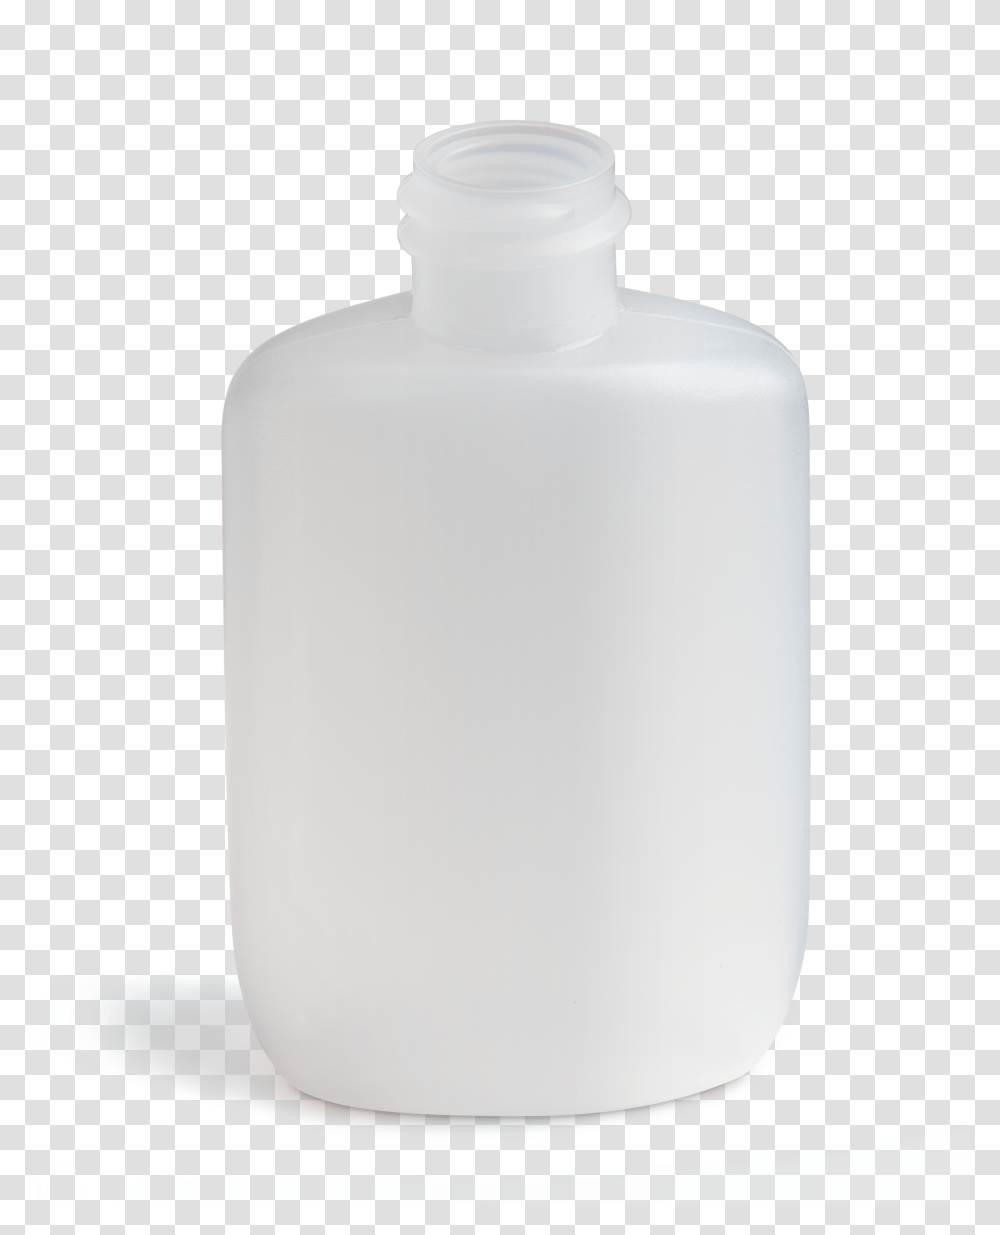 Oz Standard Oval Glass Bottle, Milk, Beverage, Drink, Shaker Transparent Png